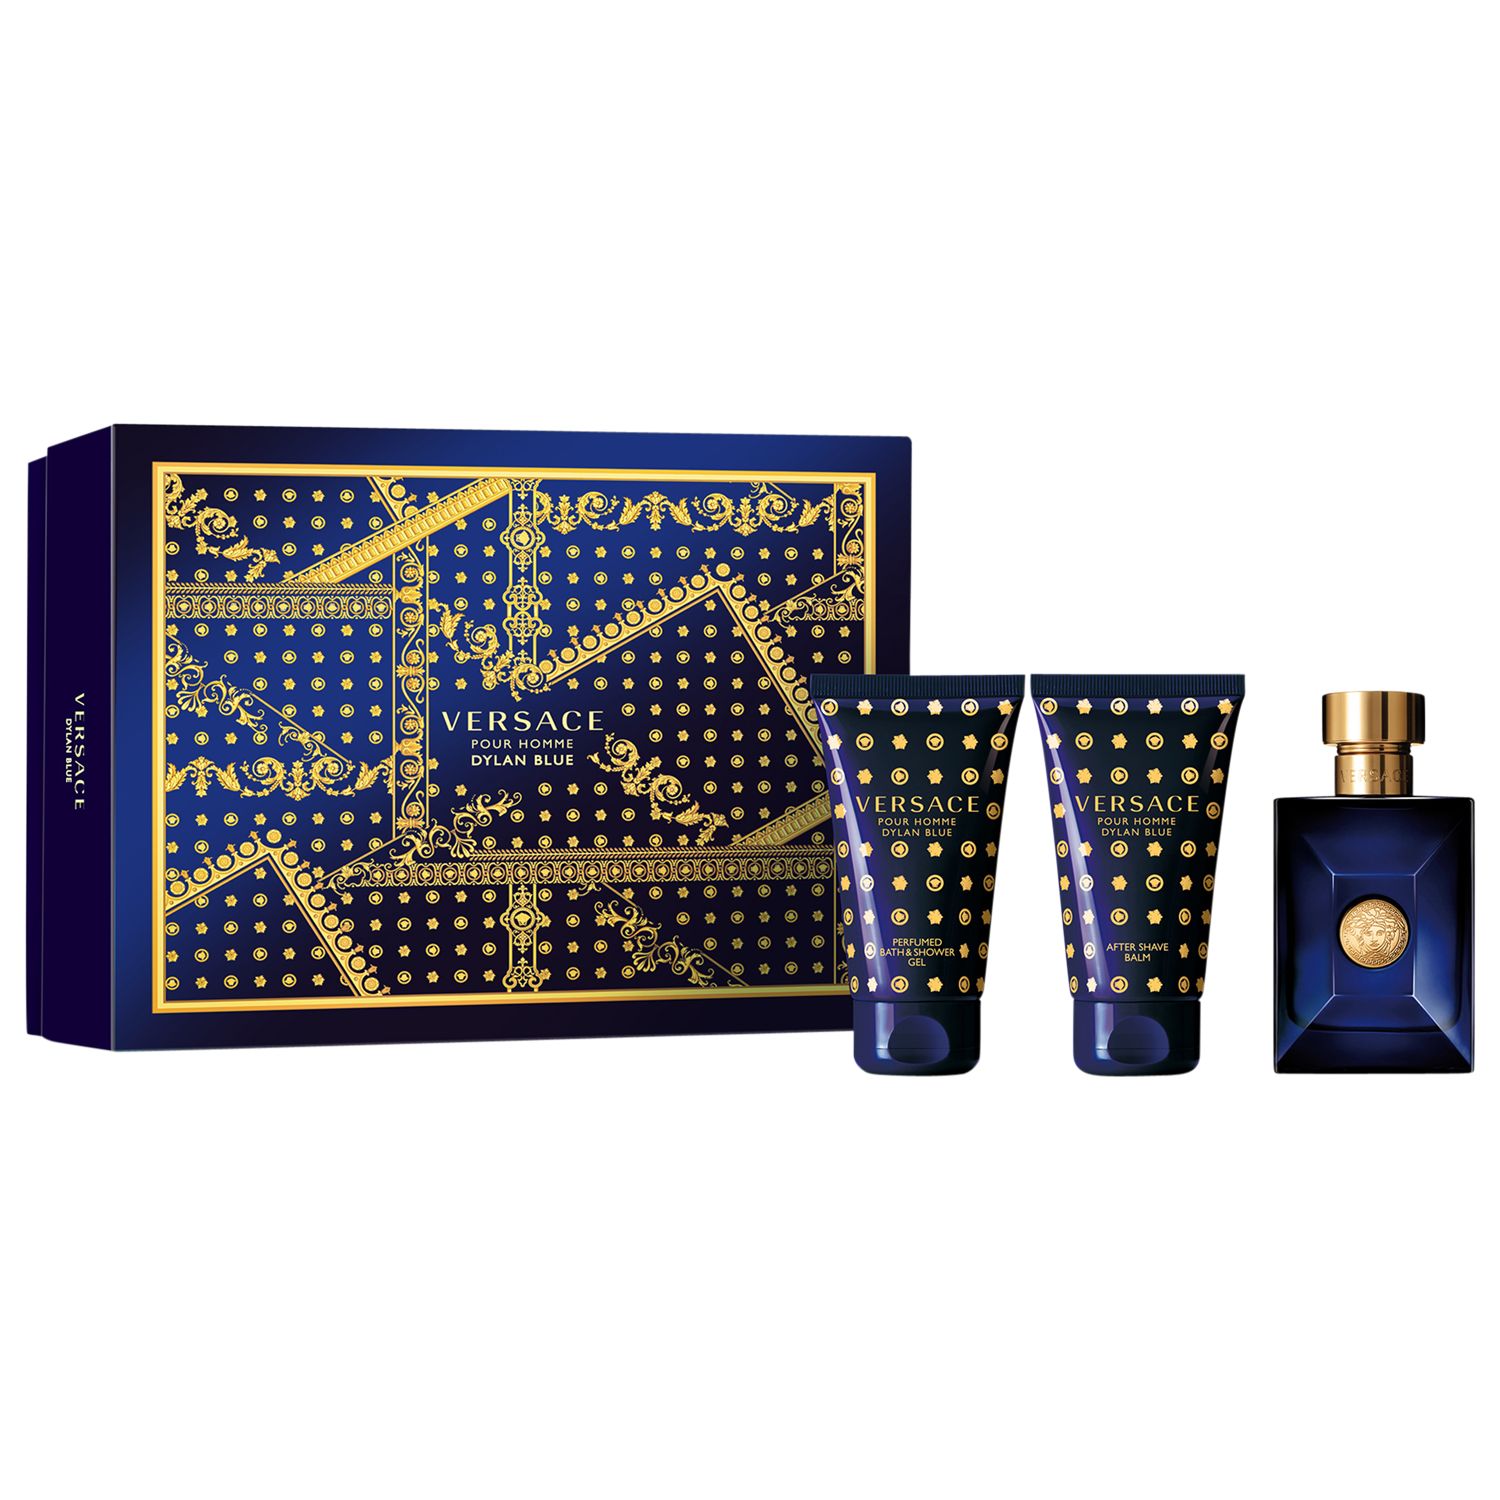 Versace Dylan Blue 50ml Eau de Toilette Fragrance Gift Set Reviews